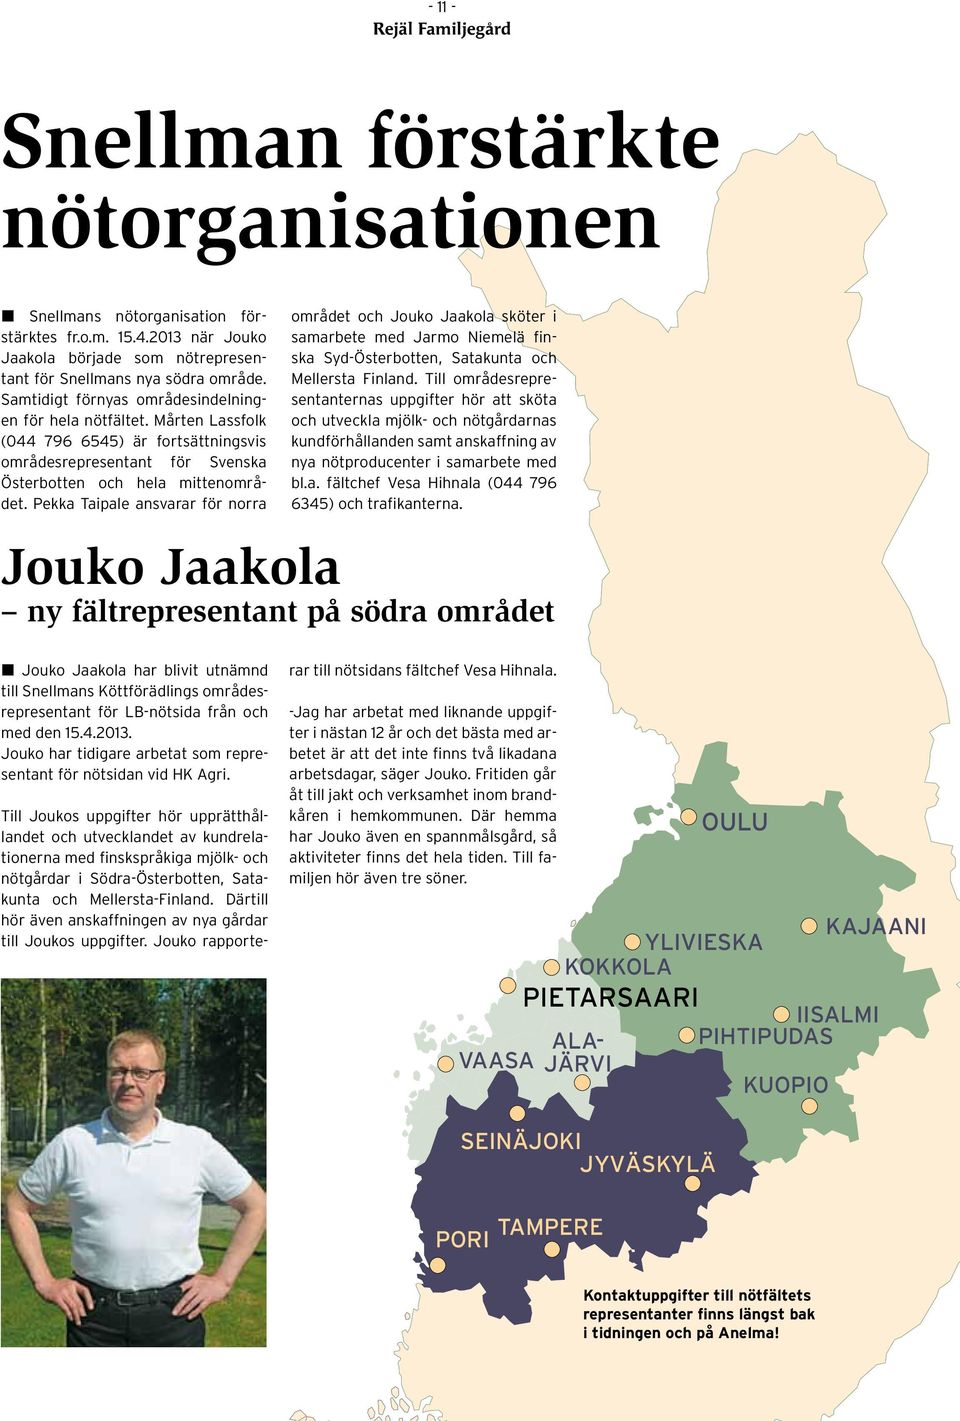 Pekka Taipale ansvarar för norra området och Jouko Jaakola sköter i samarbete med Jarmo Niemelä finska Syd-Österbotten, Satakunta och Mellersta Finland.